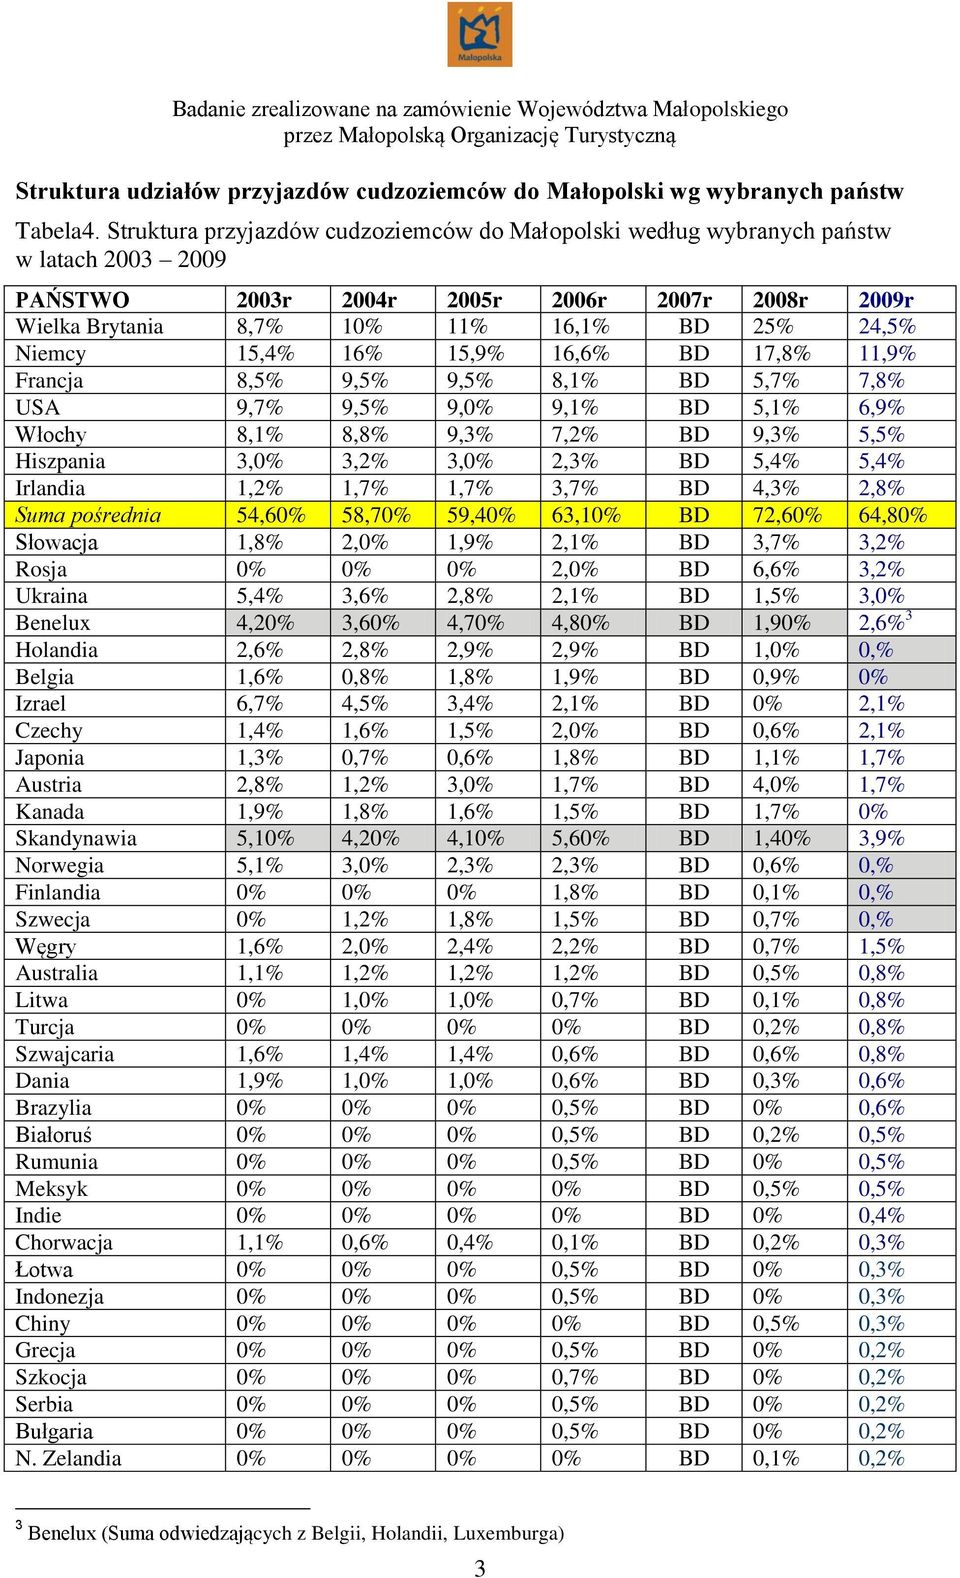 15,4% 16% 15,9% 16,6% BD 17,8% 11,9% Francja 8,5% 9,5% 9,5% 8,1% BD 5,7% 7,8% USA 9,7% 9,5% 9,0% 9,1% BD 5,1% 6,9% Włochy 8,1% 8,8% 9,3% 7,2% BD 9,3% 5,5% Hiszpania 3,0% 3,2% 3,0% 2,3% BD 5,4% 5,4%